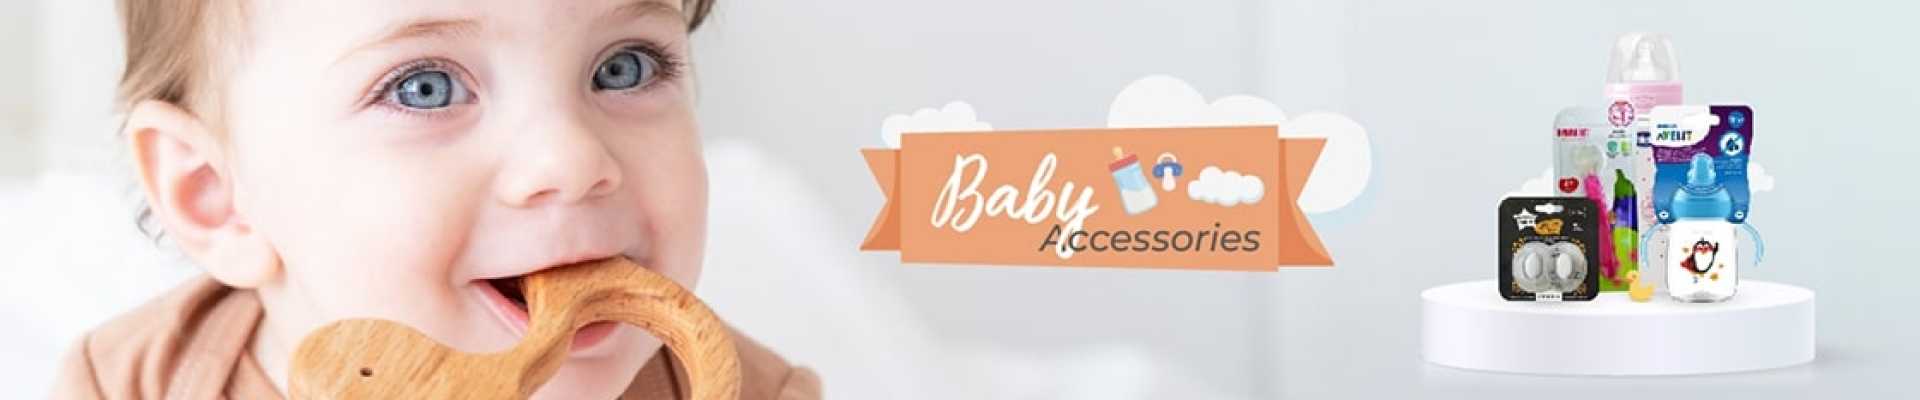 baby accessories slider